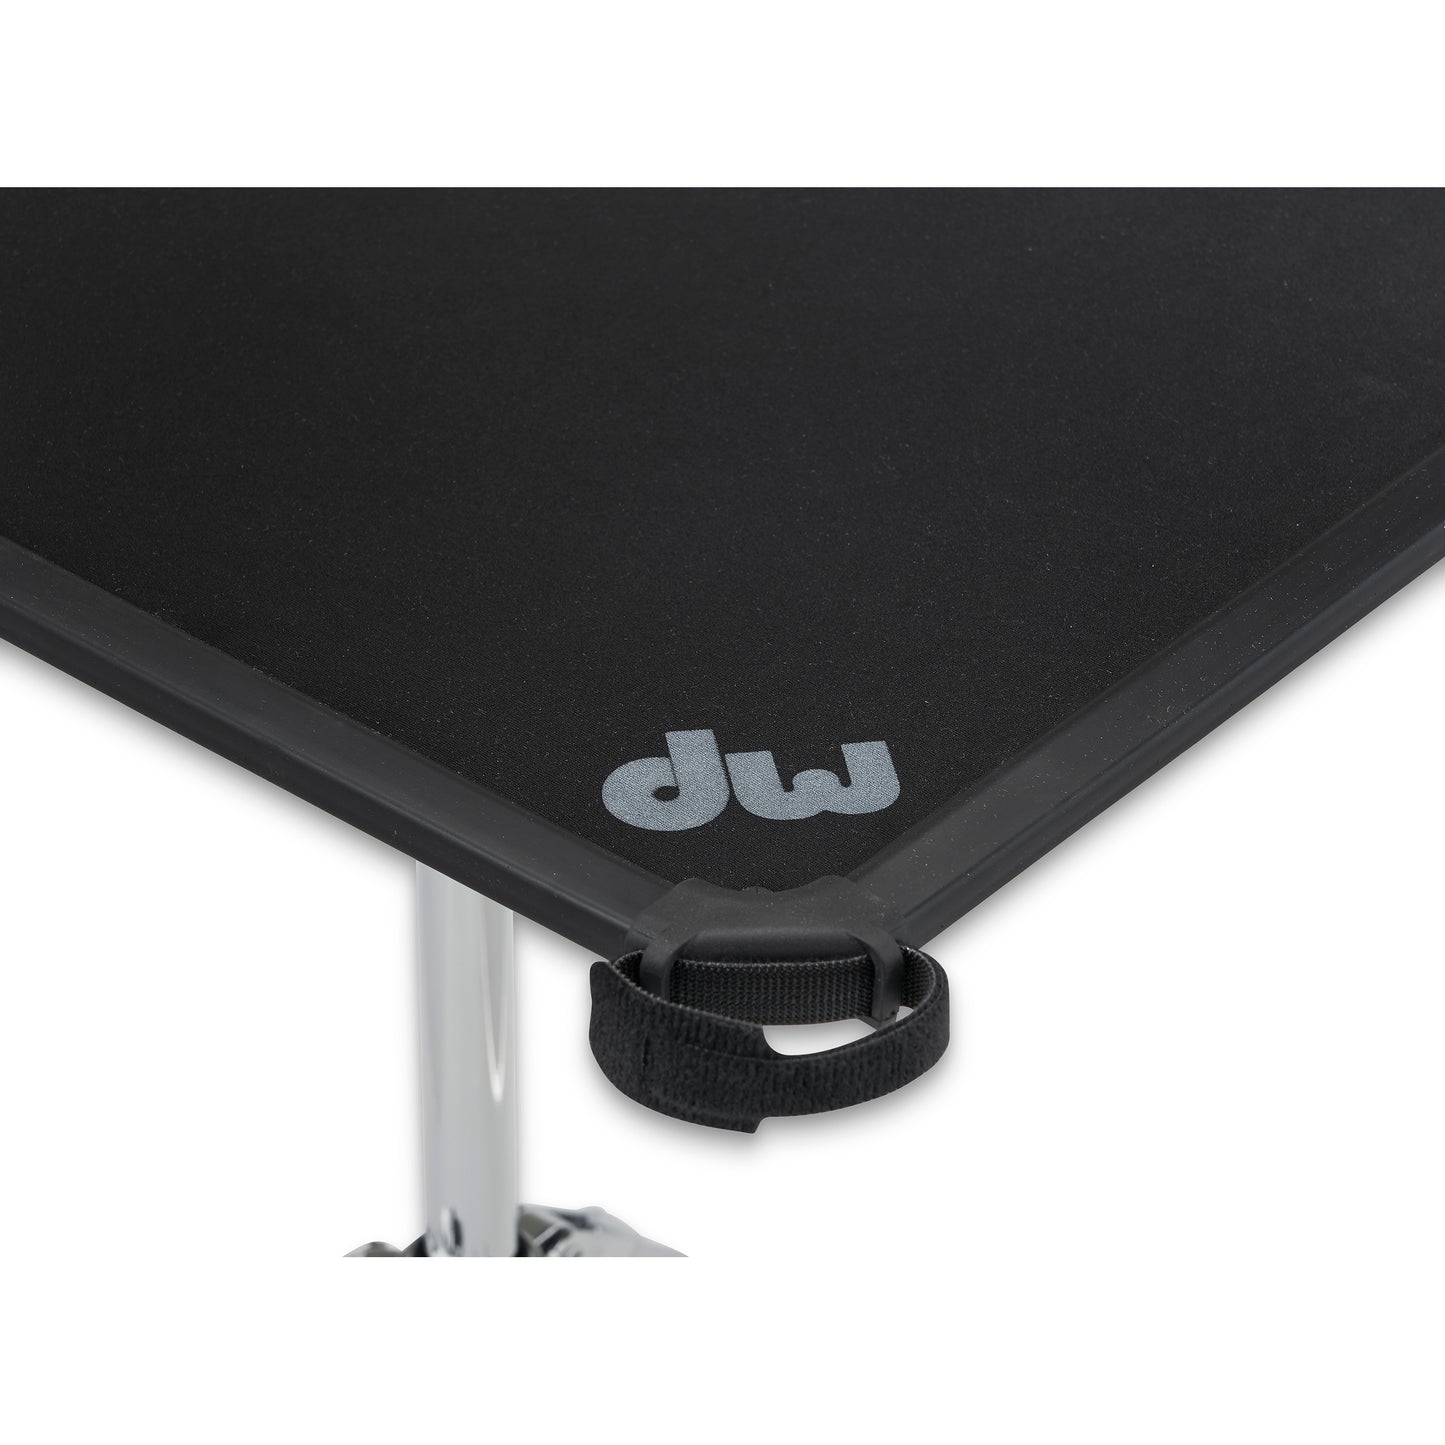 Drum Workshop DWCP3800LS 3000 Series Laptop Table